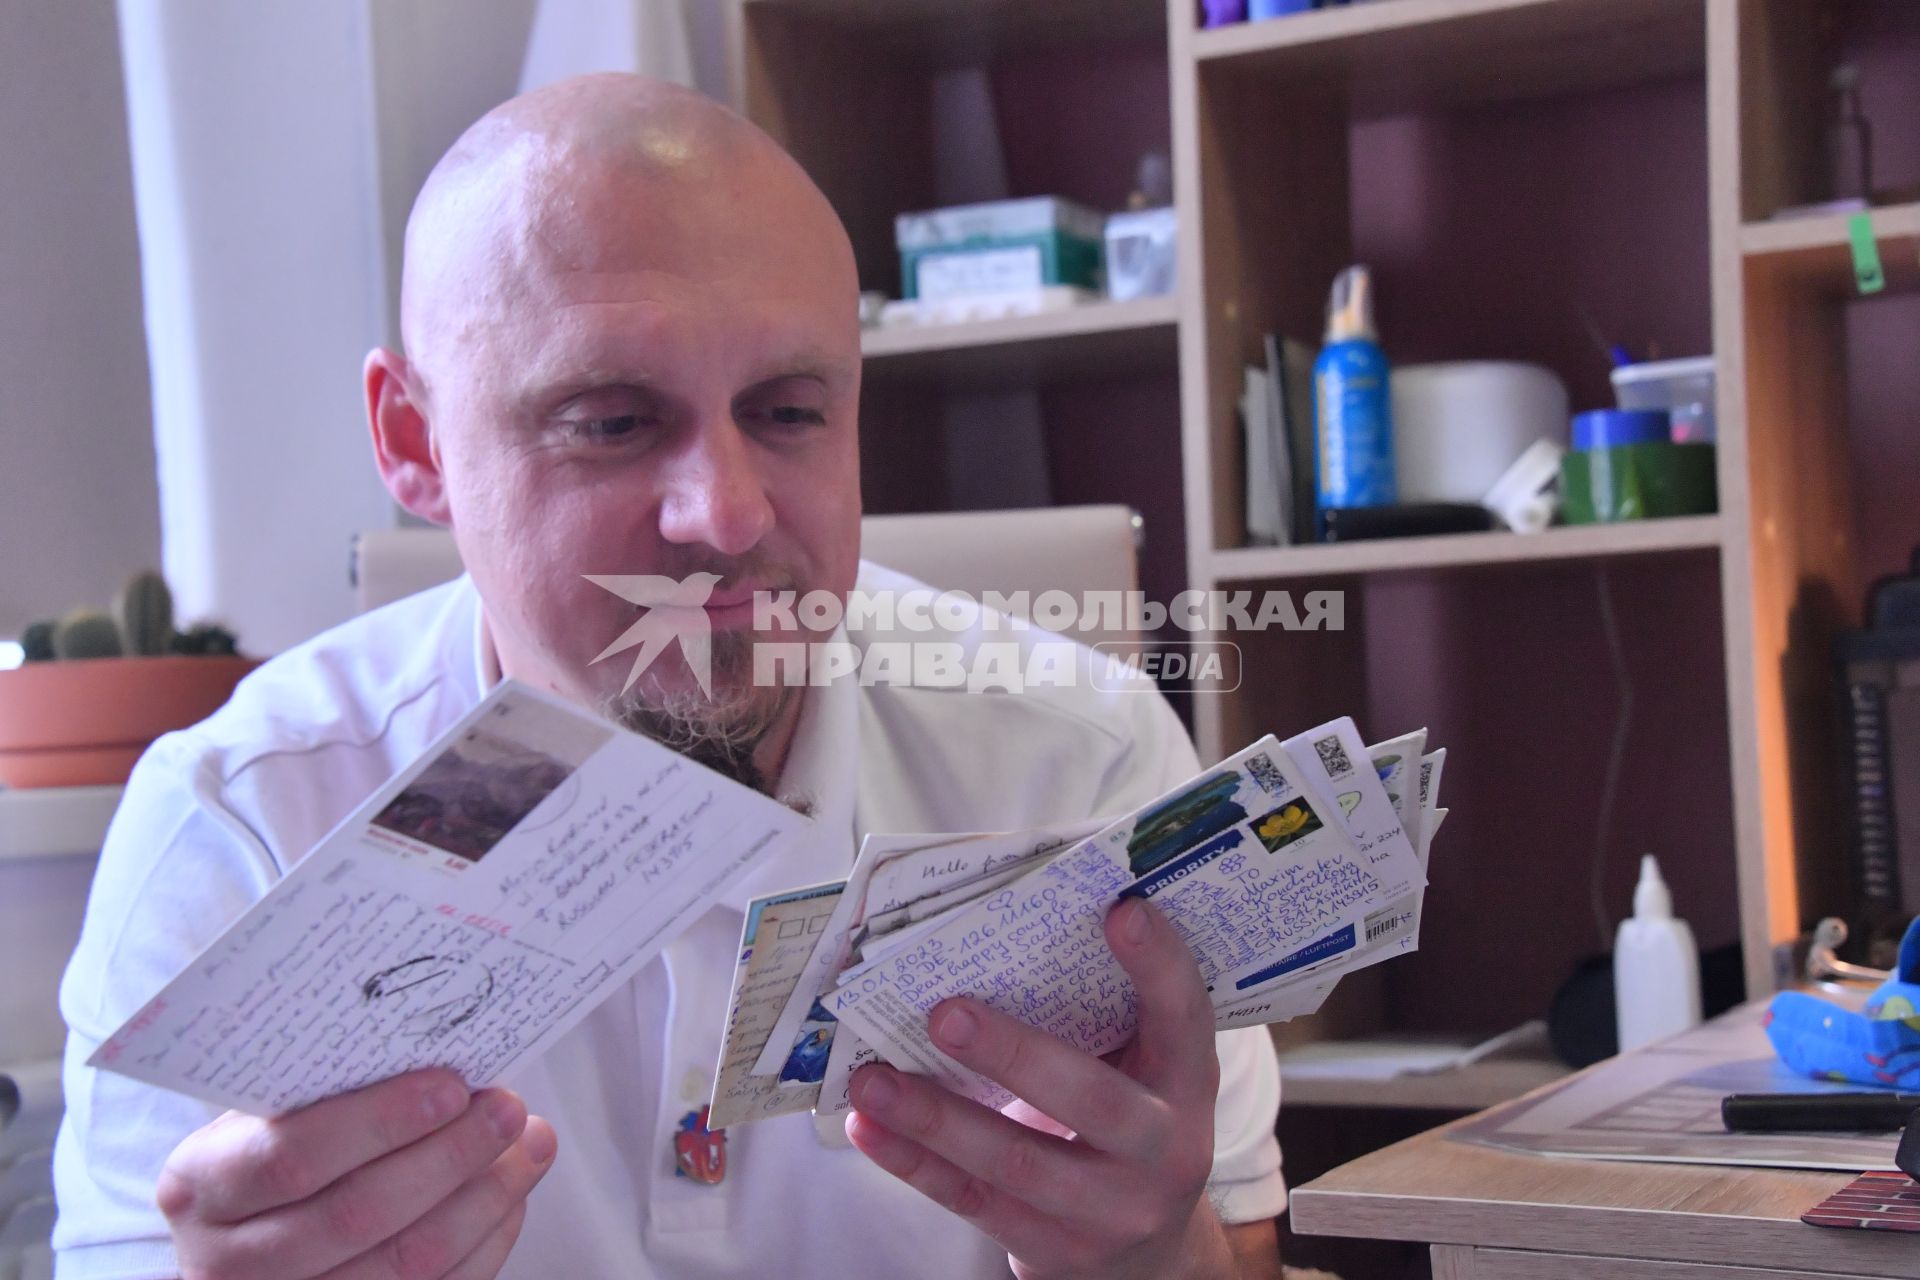 Московская область, г.Балашиха. Заведующий отделением реанимации новорожденных Максим Кондратьев спасает детей и обменивается открытками с людьми по всему миру.